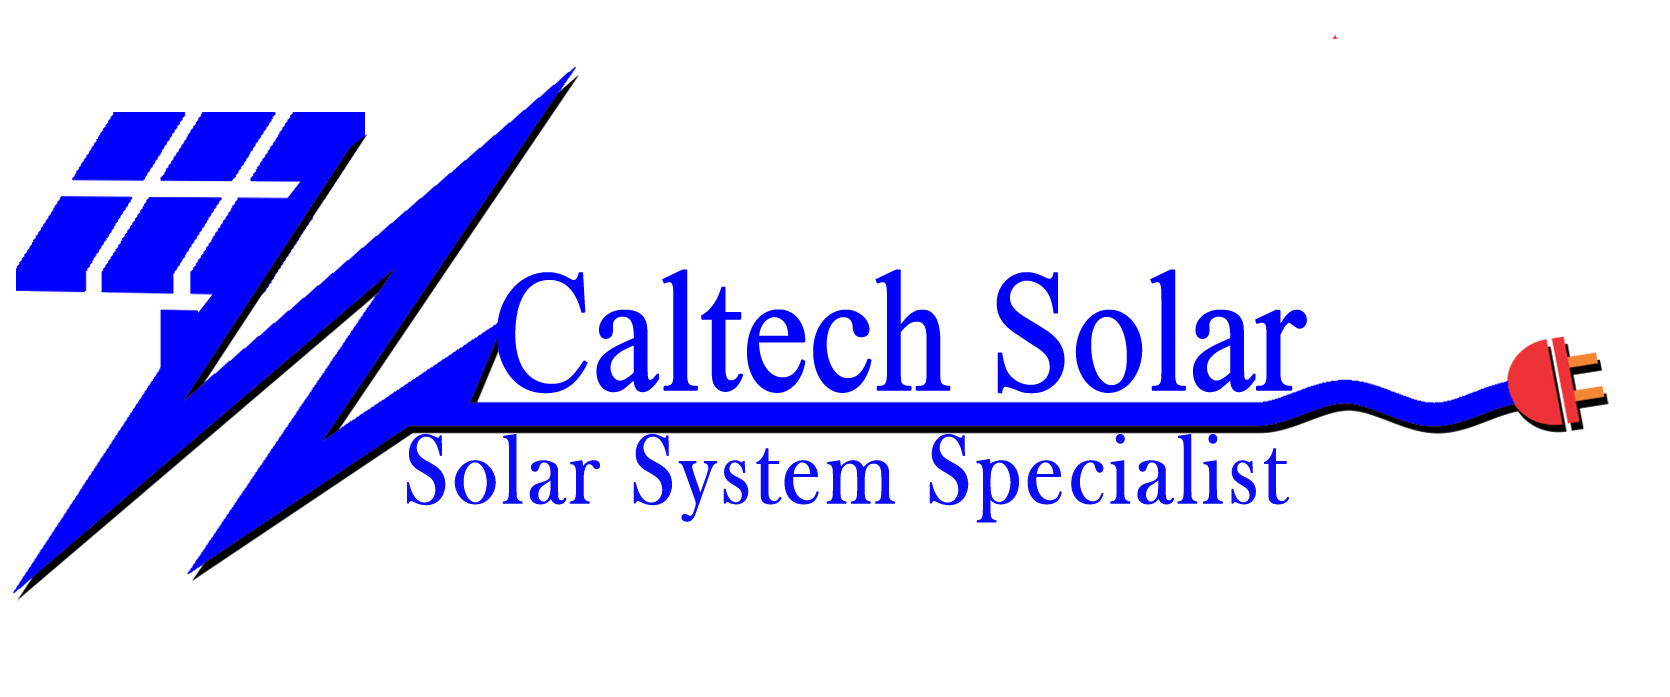 CALTECH SOLAR